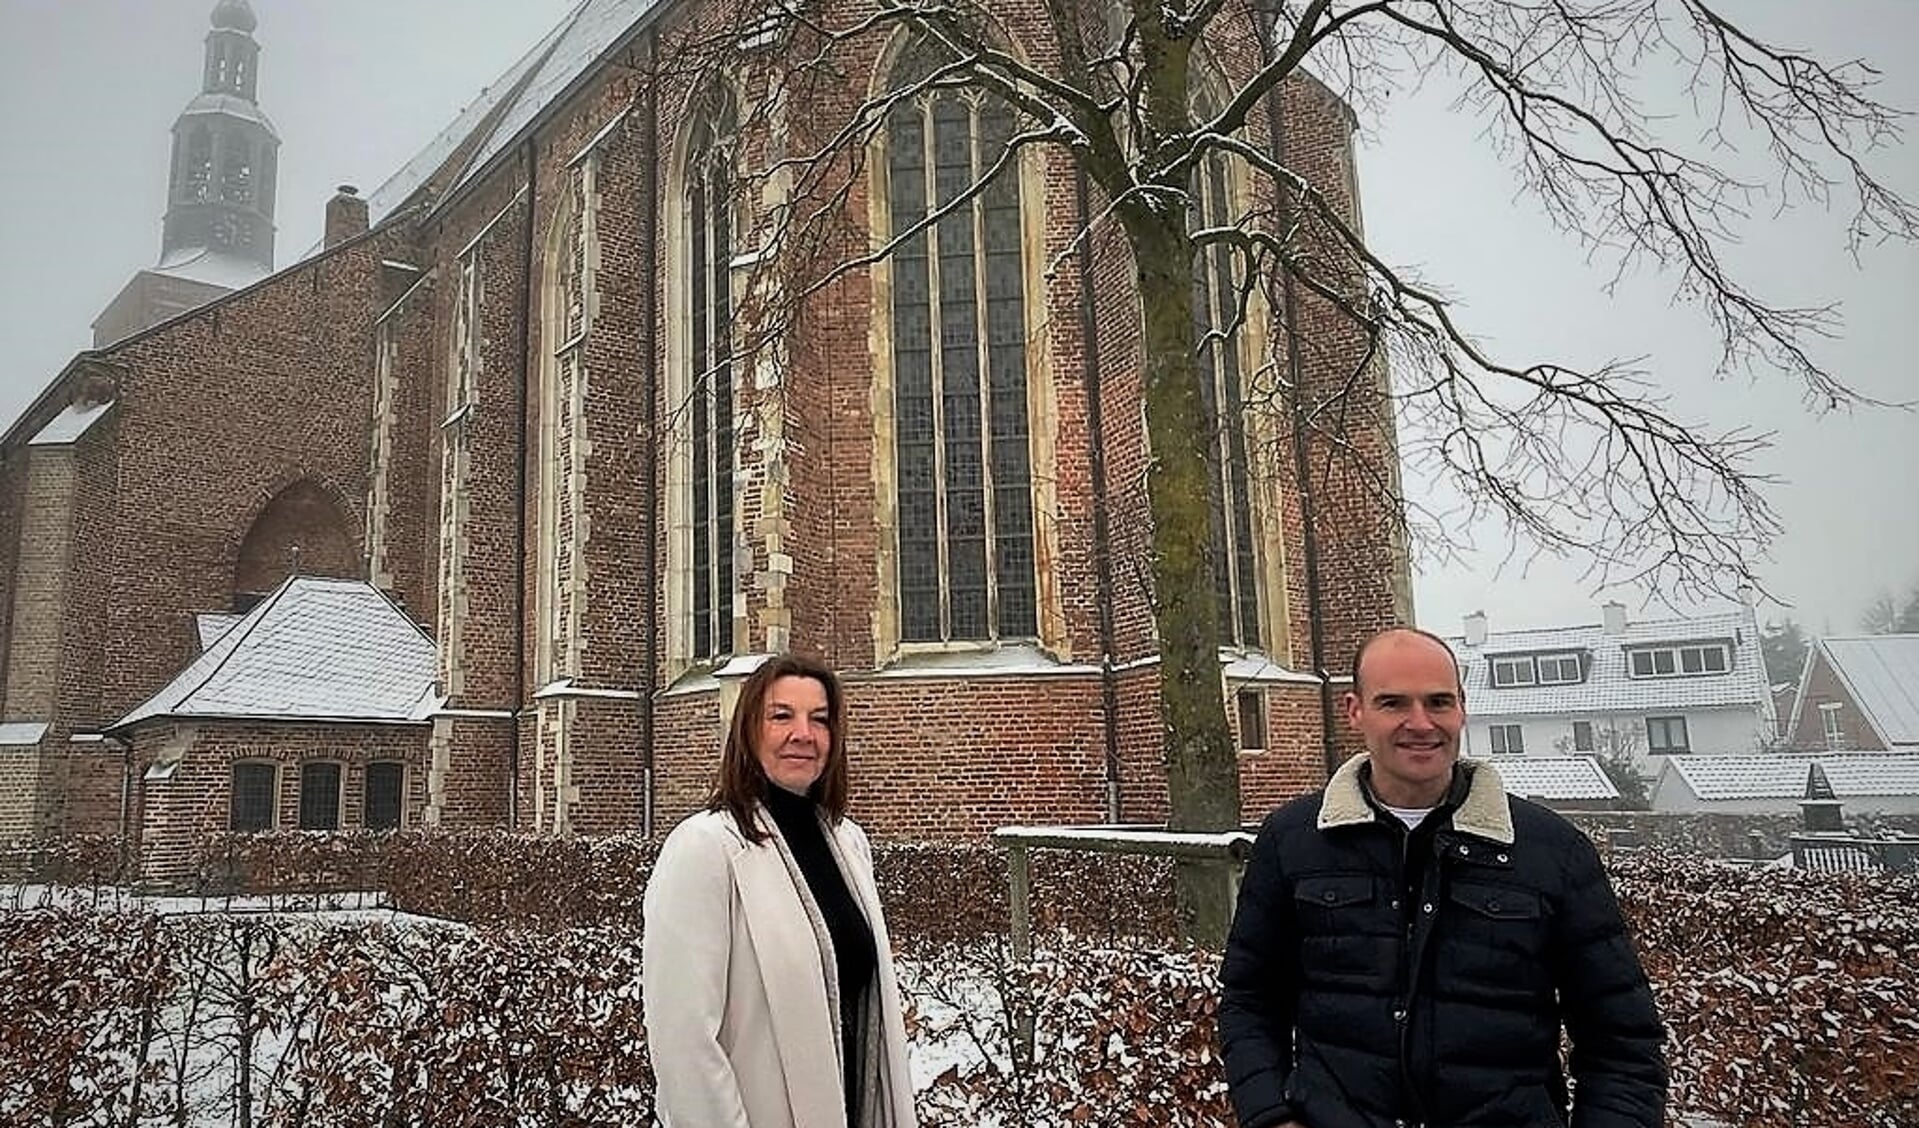 Links de nieuwe museumdirecteur Daphne Maas en rechts coördinator Koen Klein Tuente met de Oude Calixtus Kerk op de achtergrond. Foto: PR